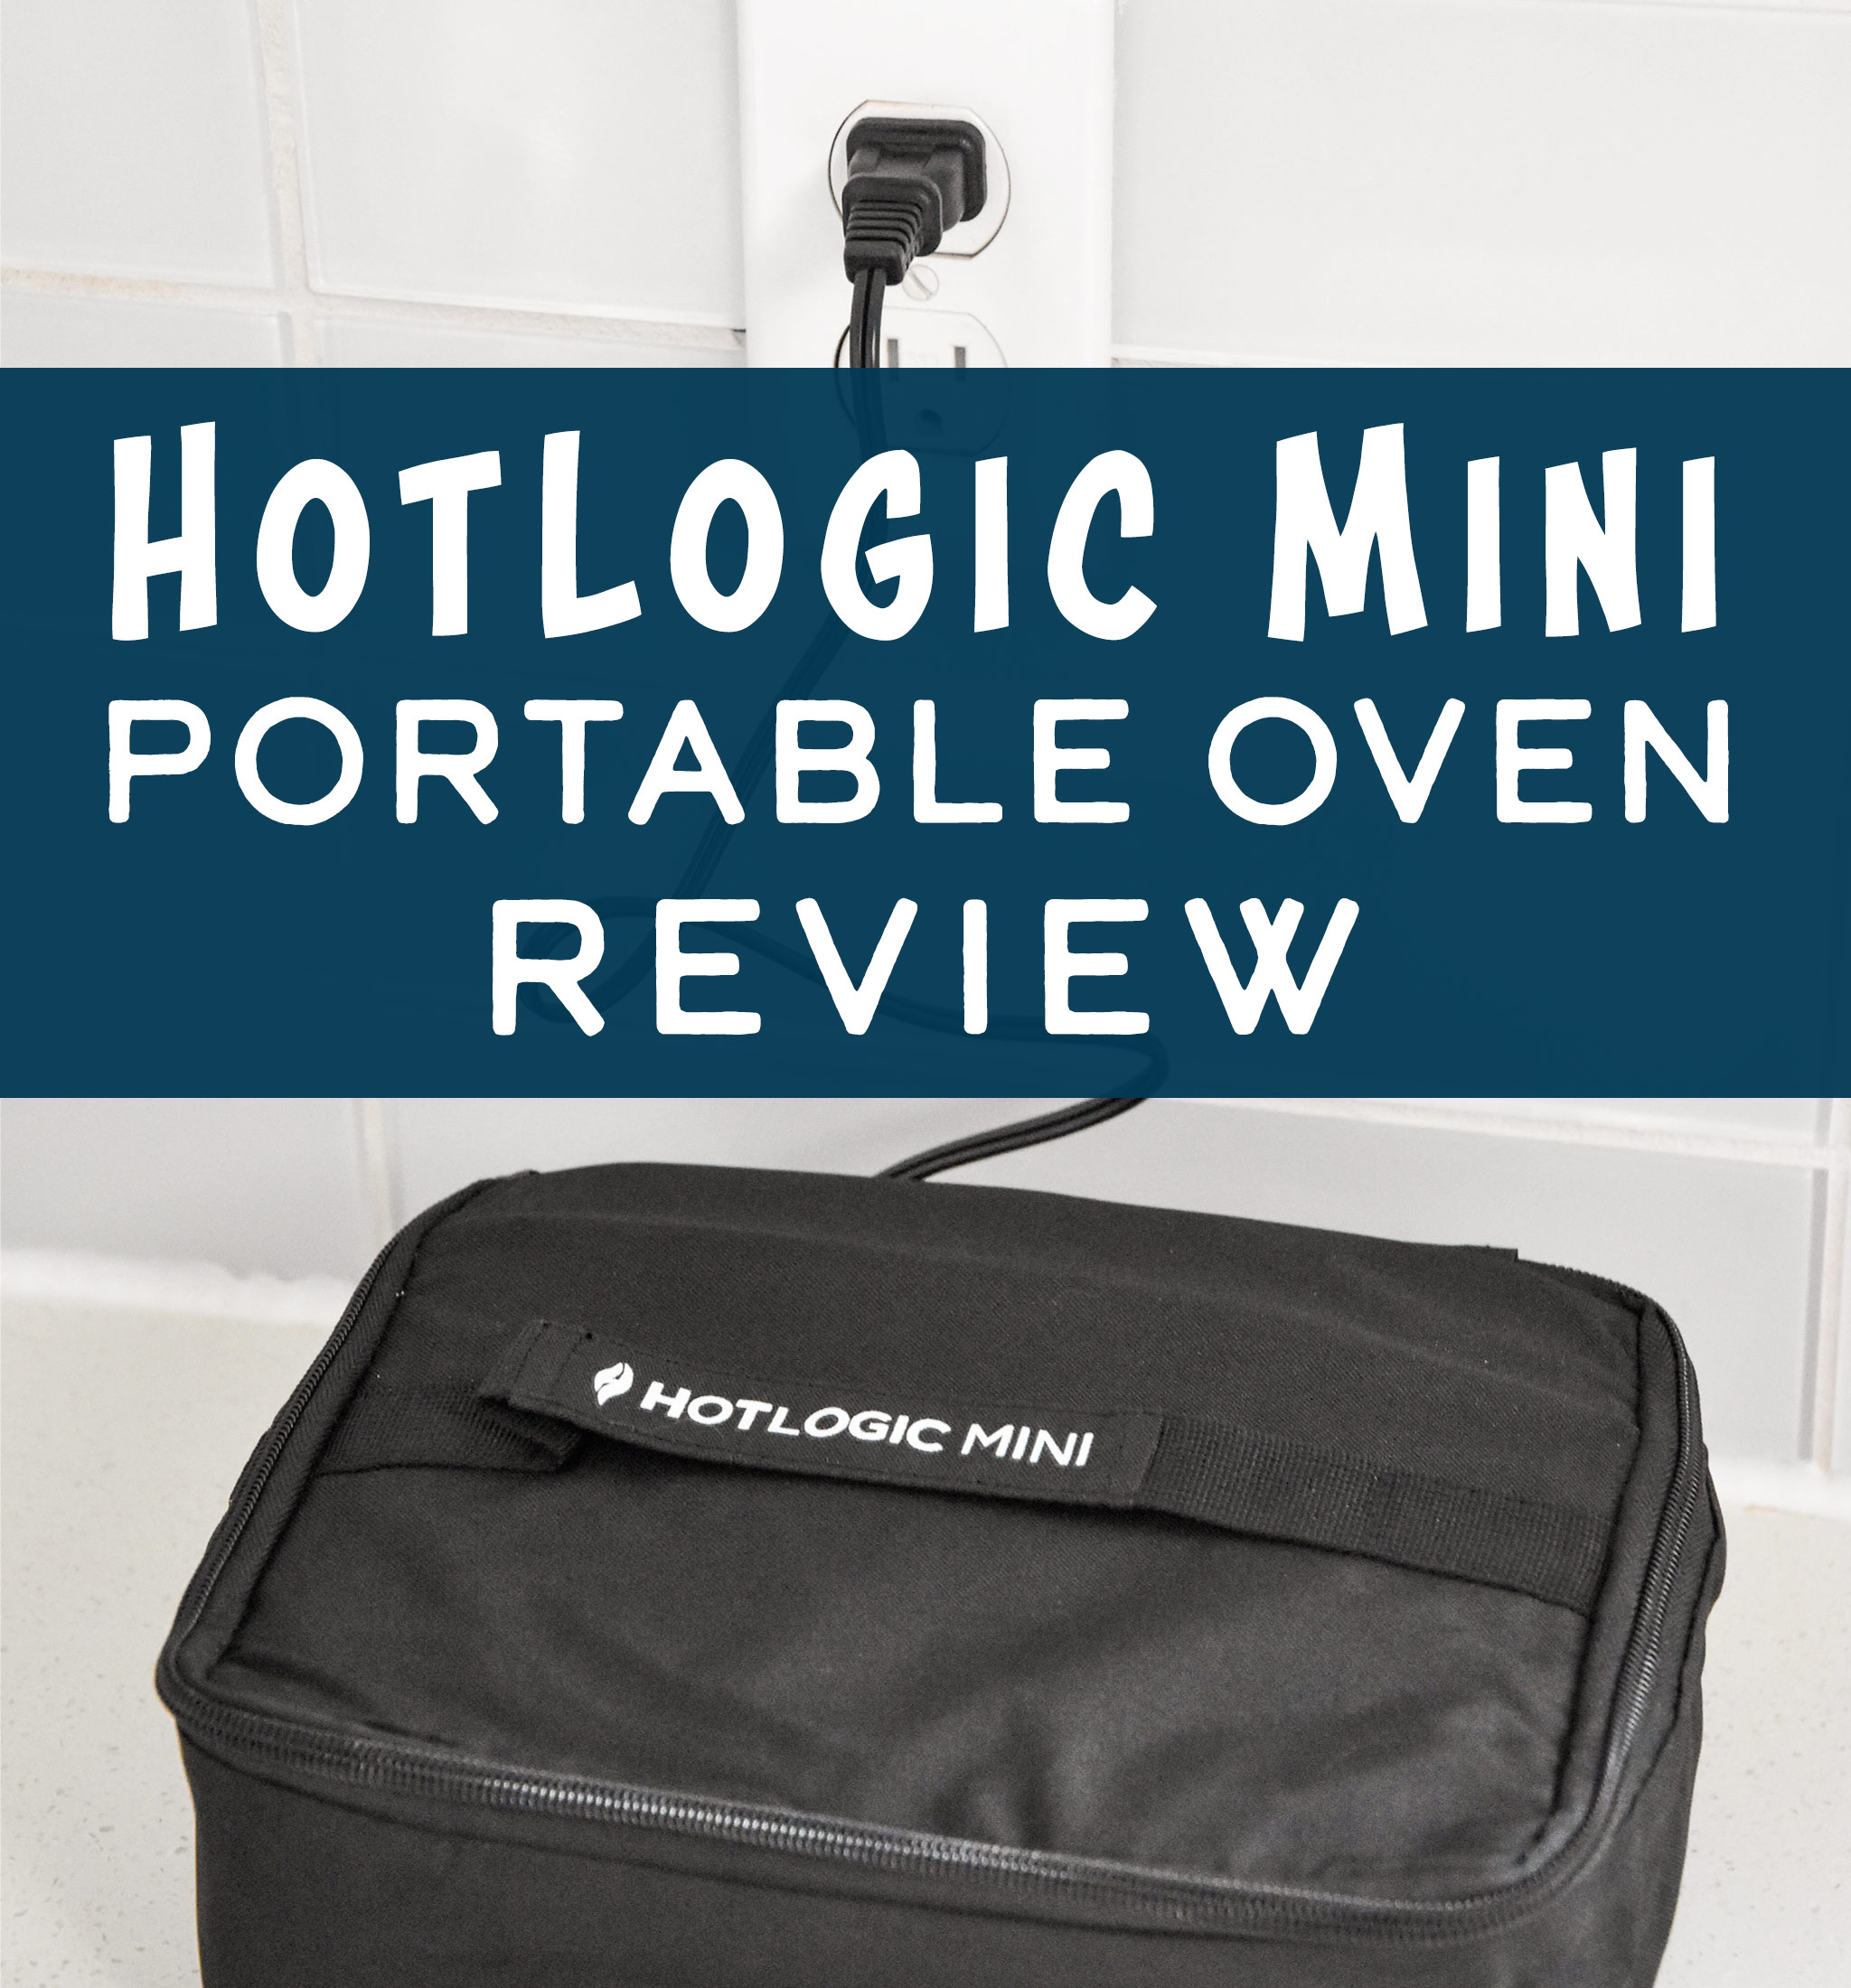 https://cdn6.projectmealplan.com/wp-content/uploads/2021/01/hot-logic-portable-oven-review-COVER.jpg